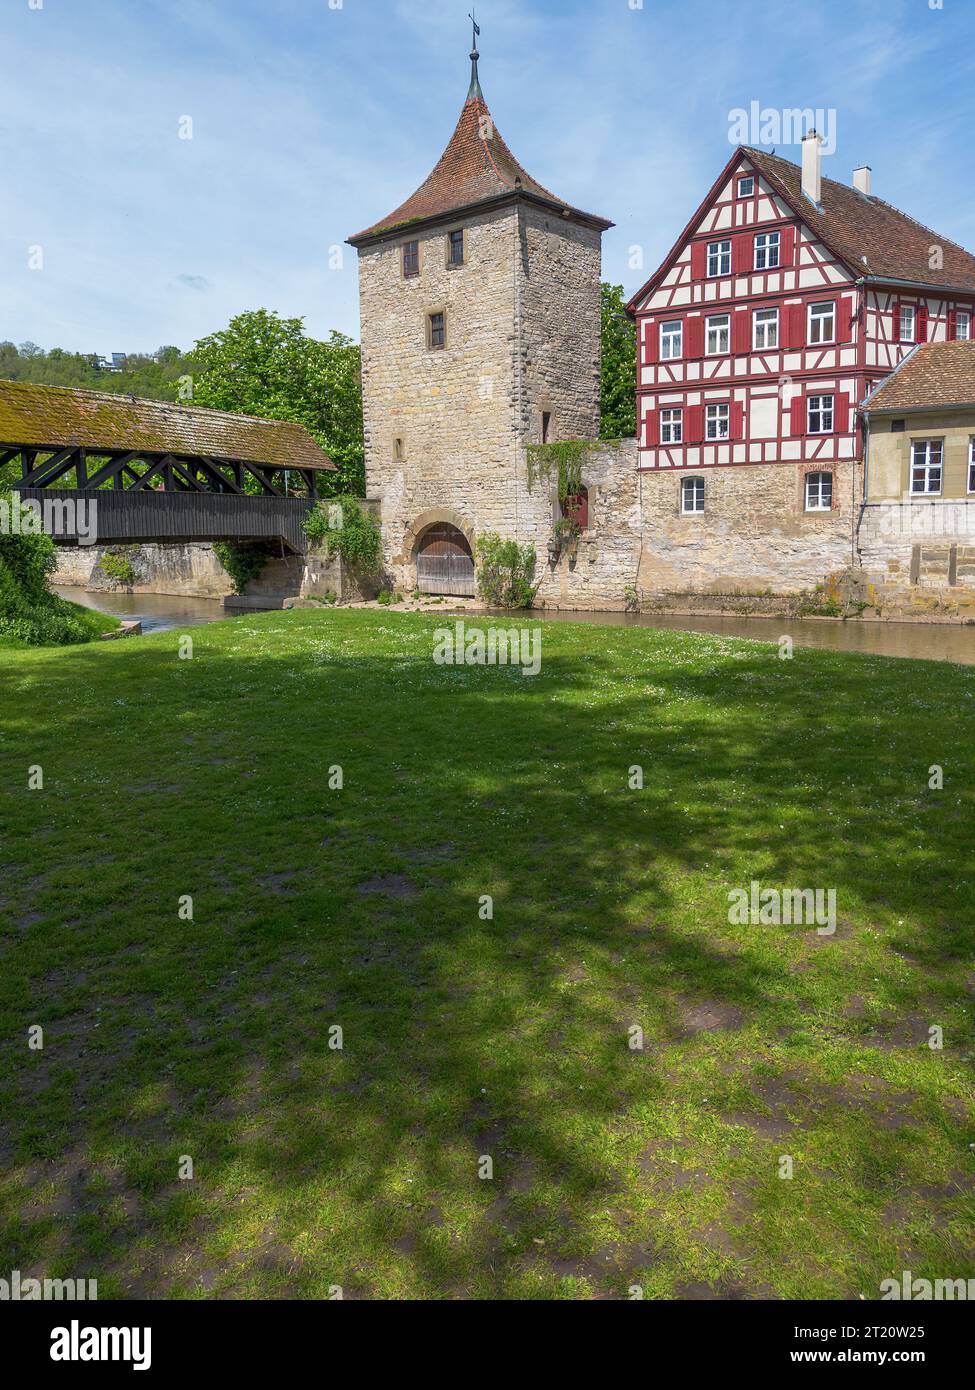 Schwaebisch Hall, vieilles maisons de ville à colombages avec vue sur le clocher de l'église, tir de drone Banque D'Images